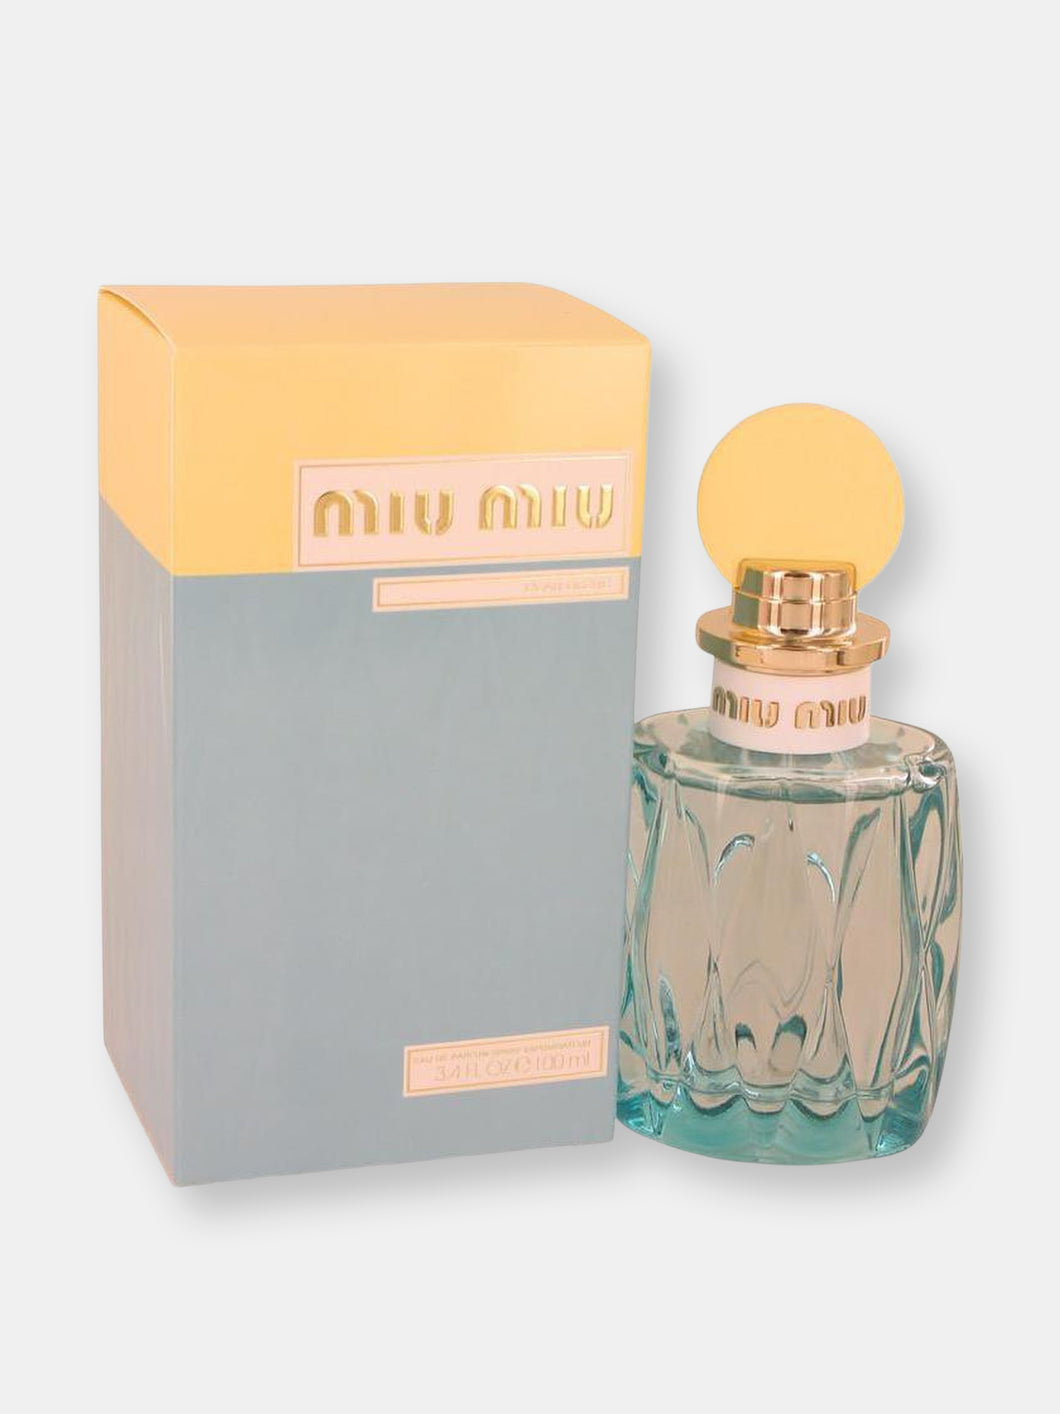 Miu Miu L'eau Bleue by Miu Miu Eau De Parfum Spray 3.4 oz